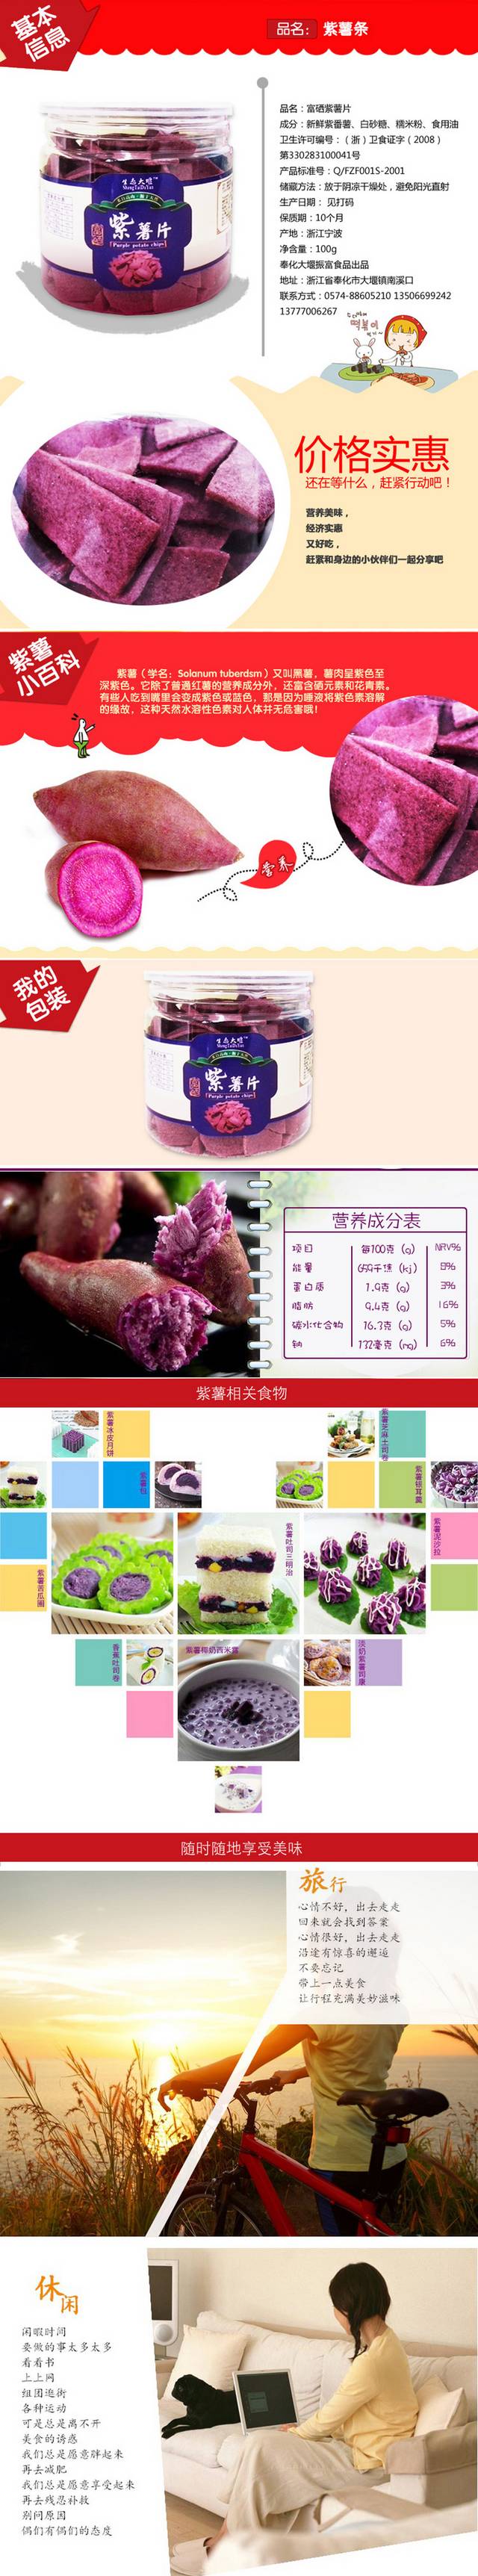 淘宝天猫紫薯片详情页描述